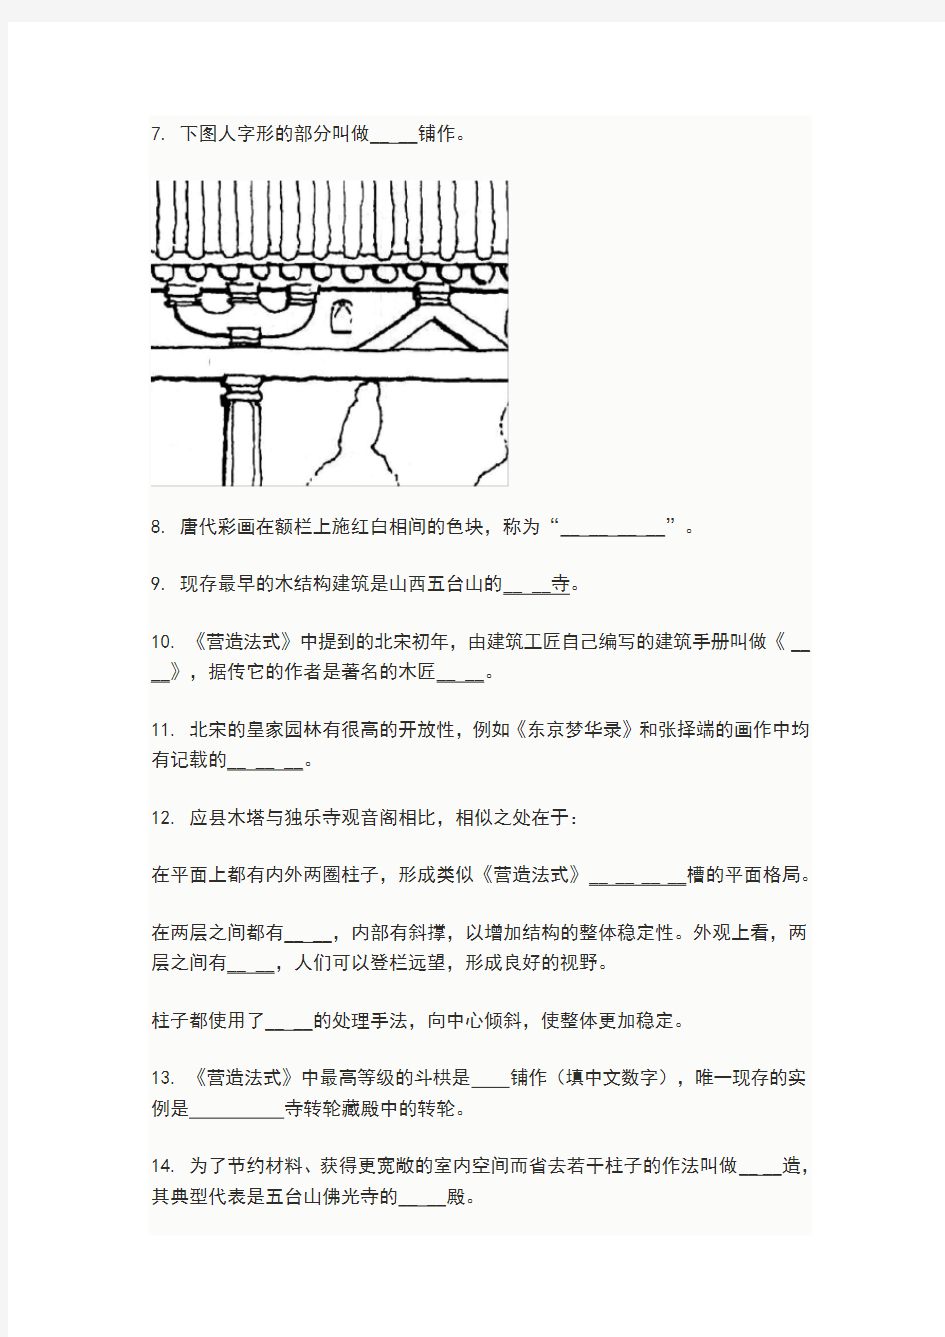 (完整版)中国建筑史期末作业题目(及答案)